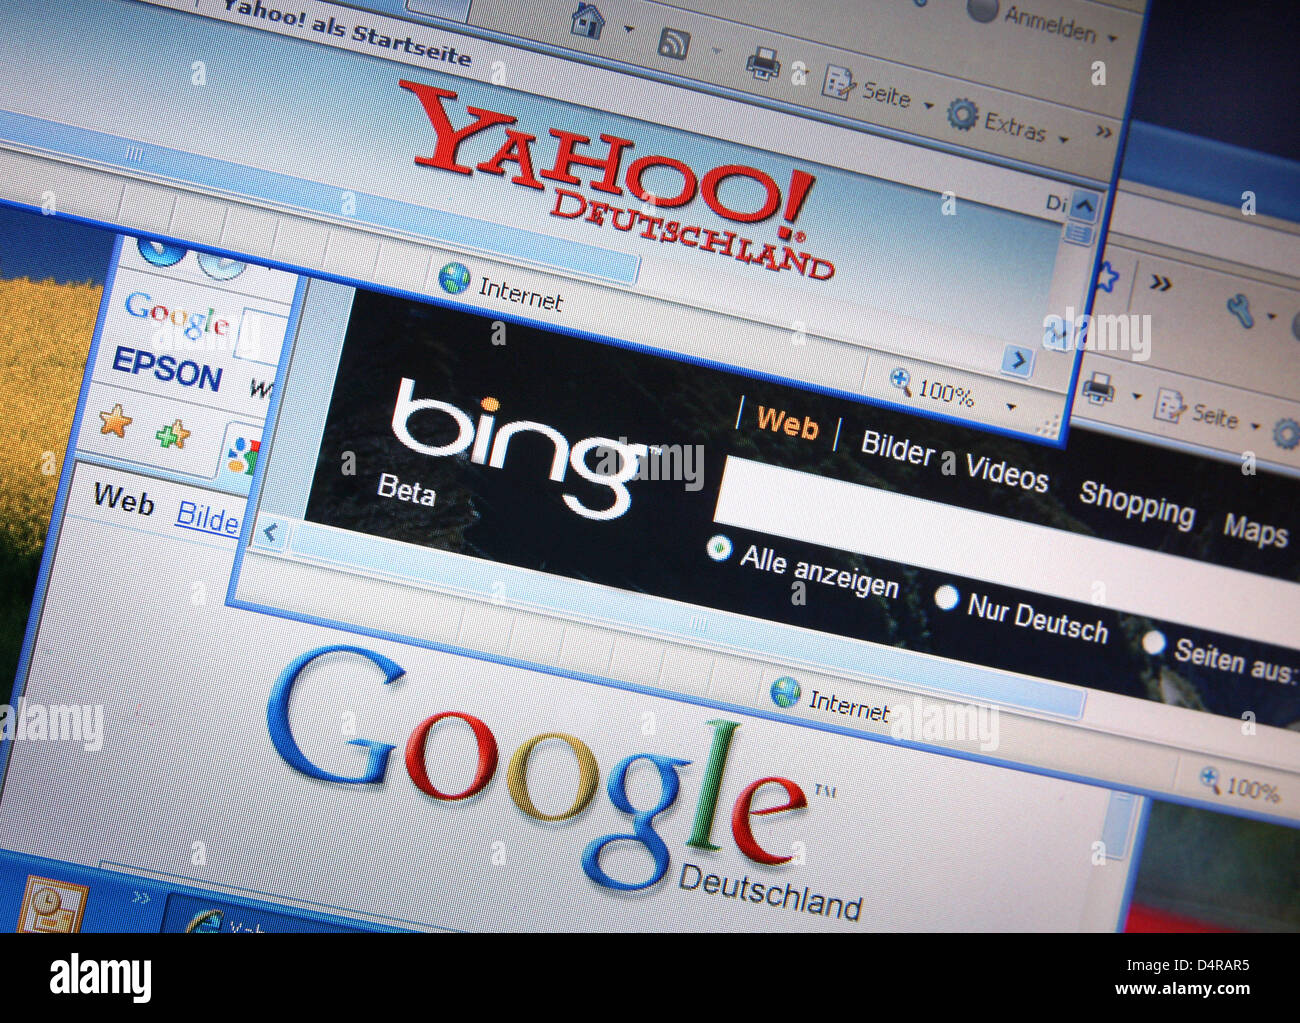 S bing. Yahoo Поисковая система. Американский Поисковик. Поисковые системы. Microsoft Producer.